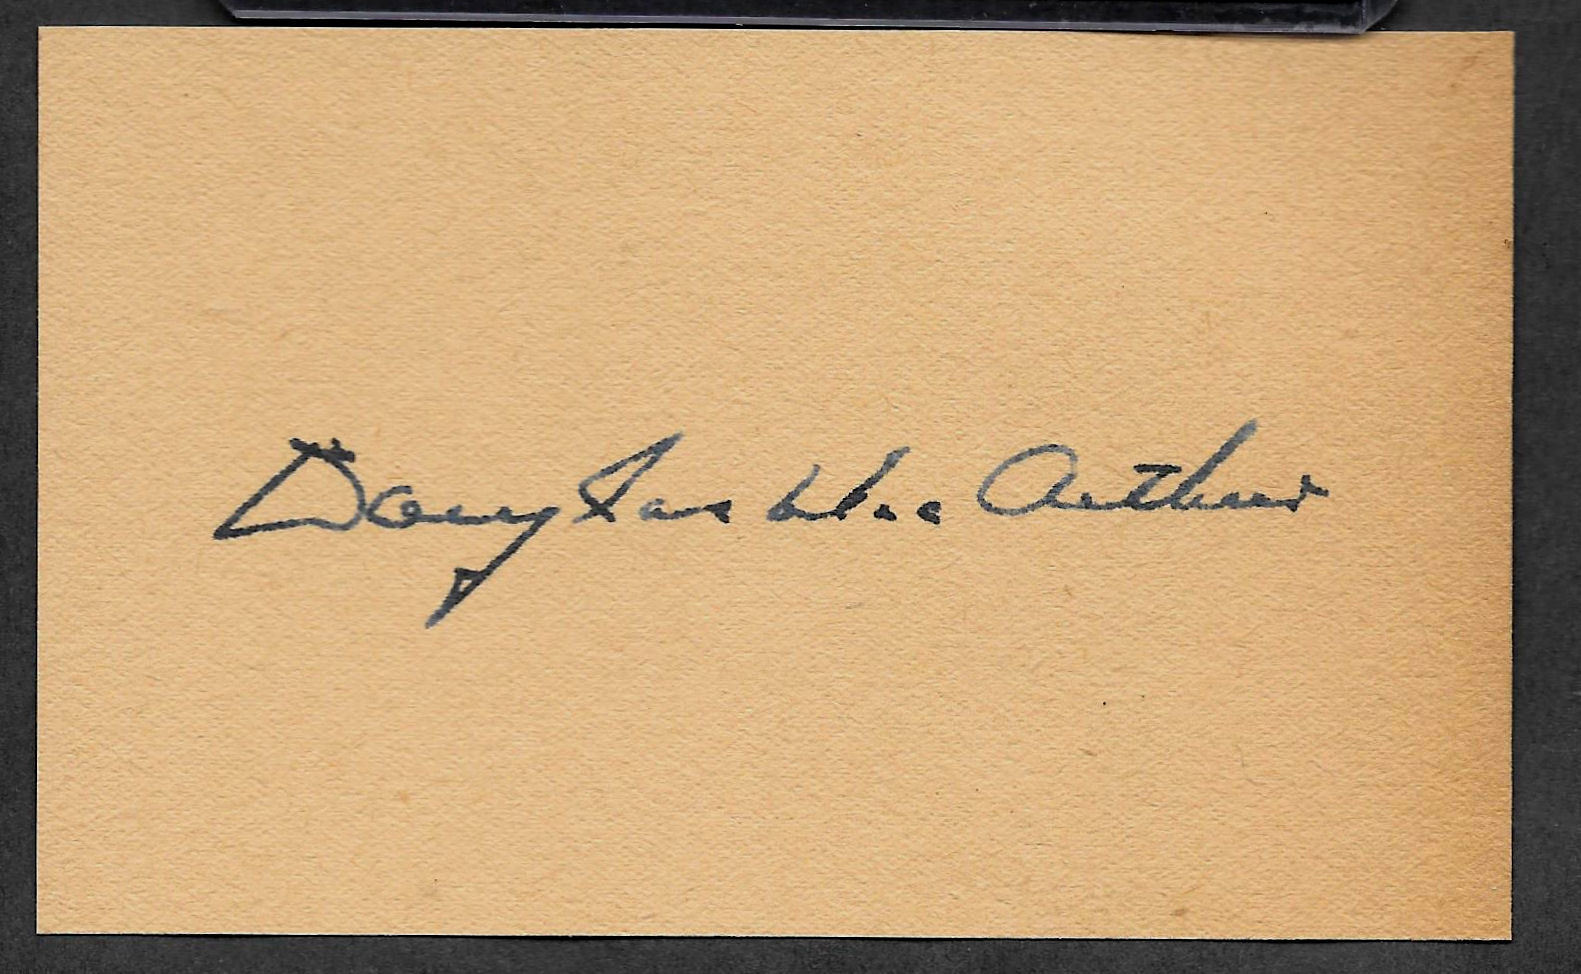 Gen. Douglas MacArthur Autograph Reprint On Genuine 1940s 3x5 Card 